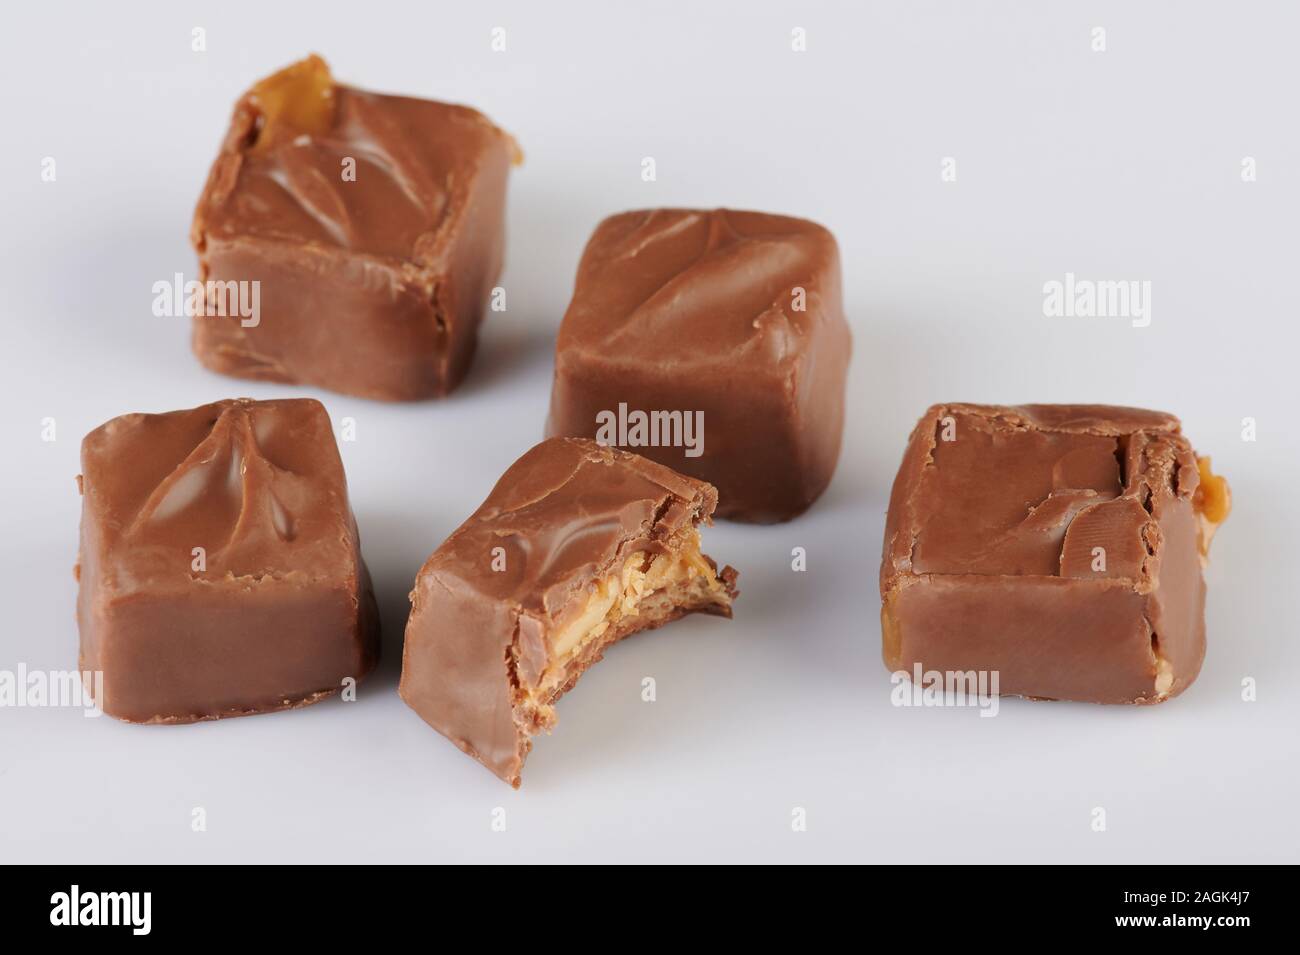 Cioccolato al latte con caramello candy bar isolato su sfondo bianco Foto Stock